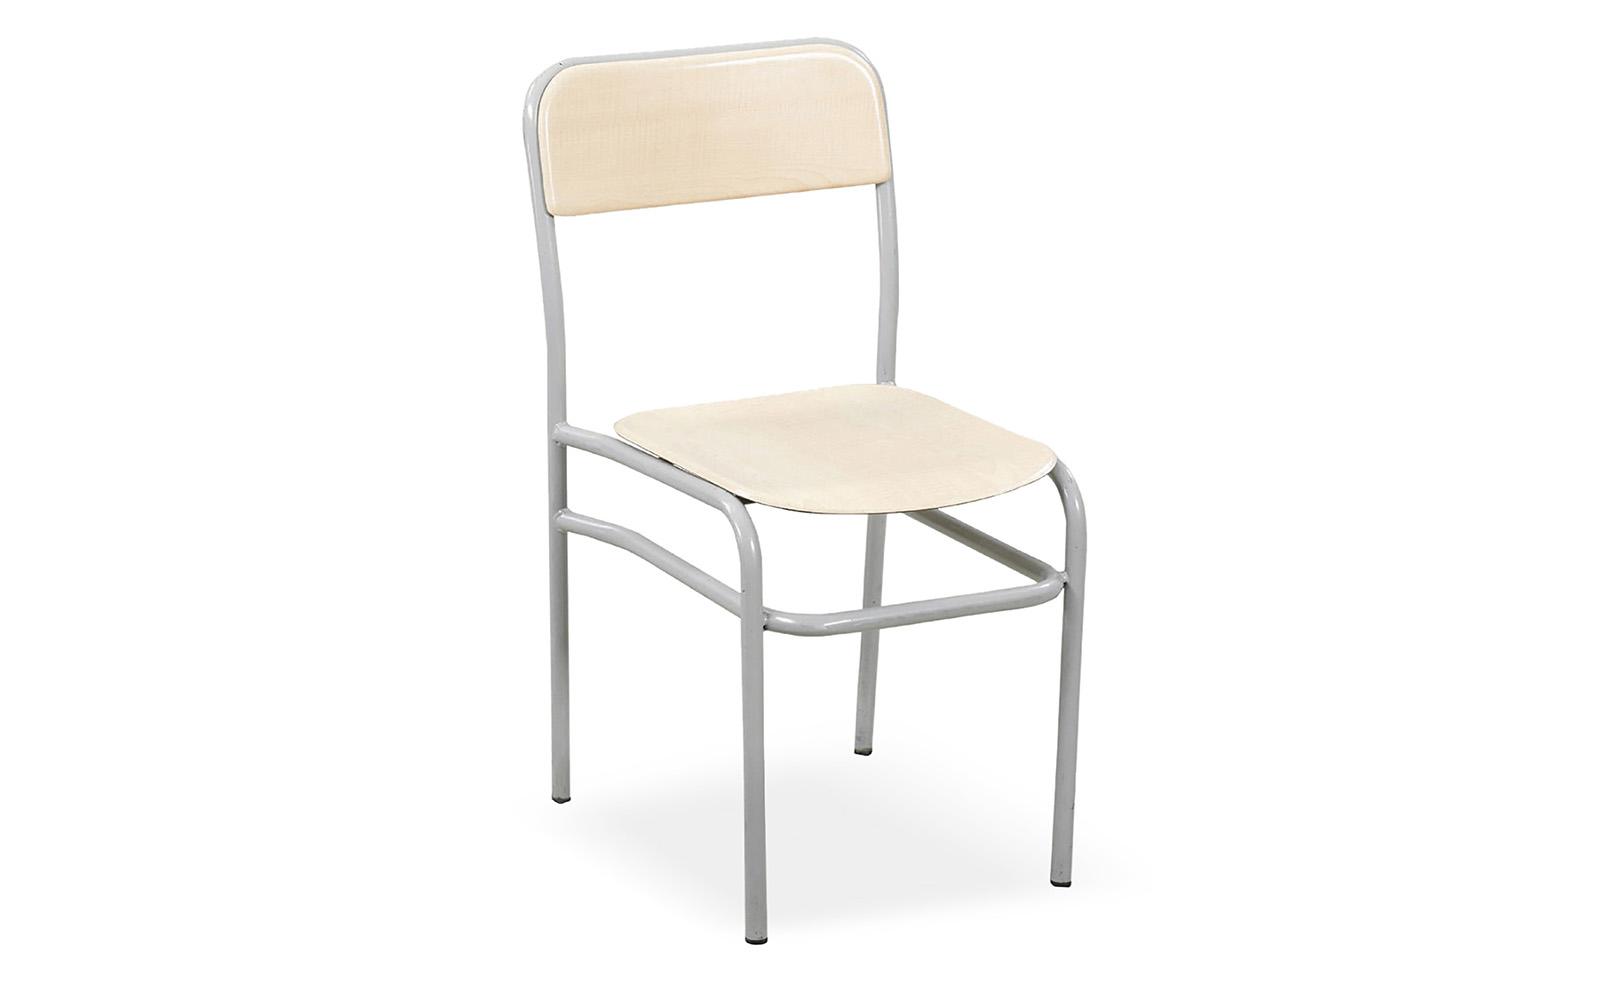 Verzalit Sandalye Takviyesiz VR02